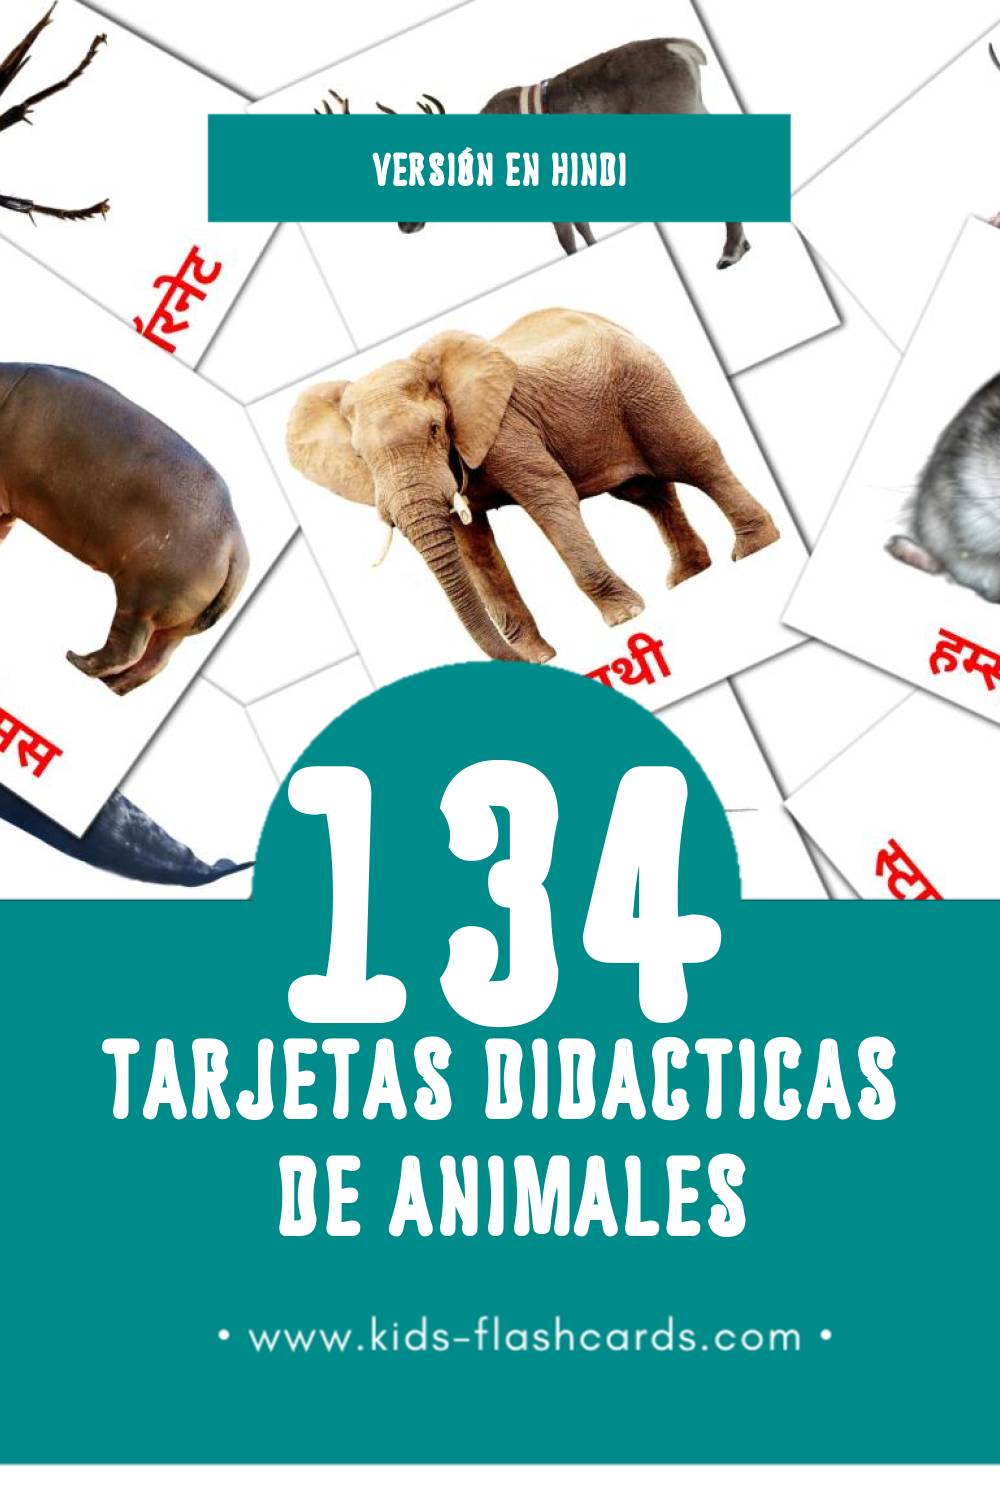 Tarjetas visuales de जानवर para niños pequeños (134 tarjetas en Hindi)